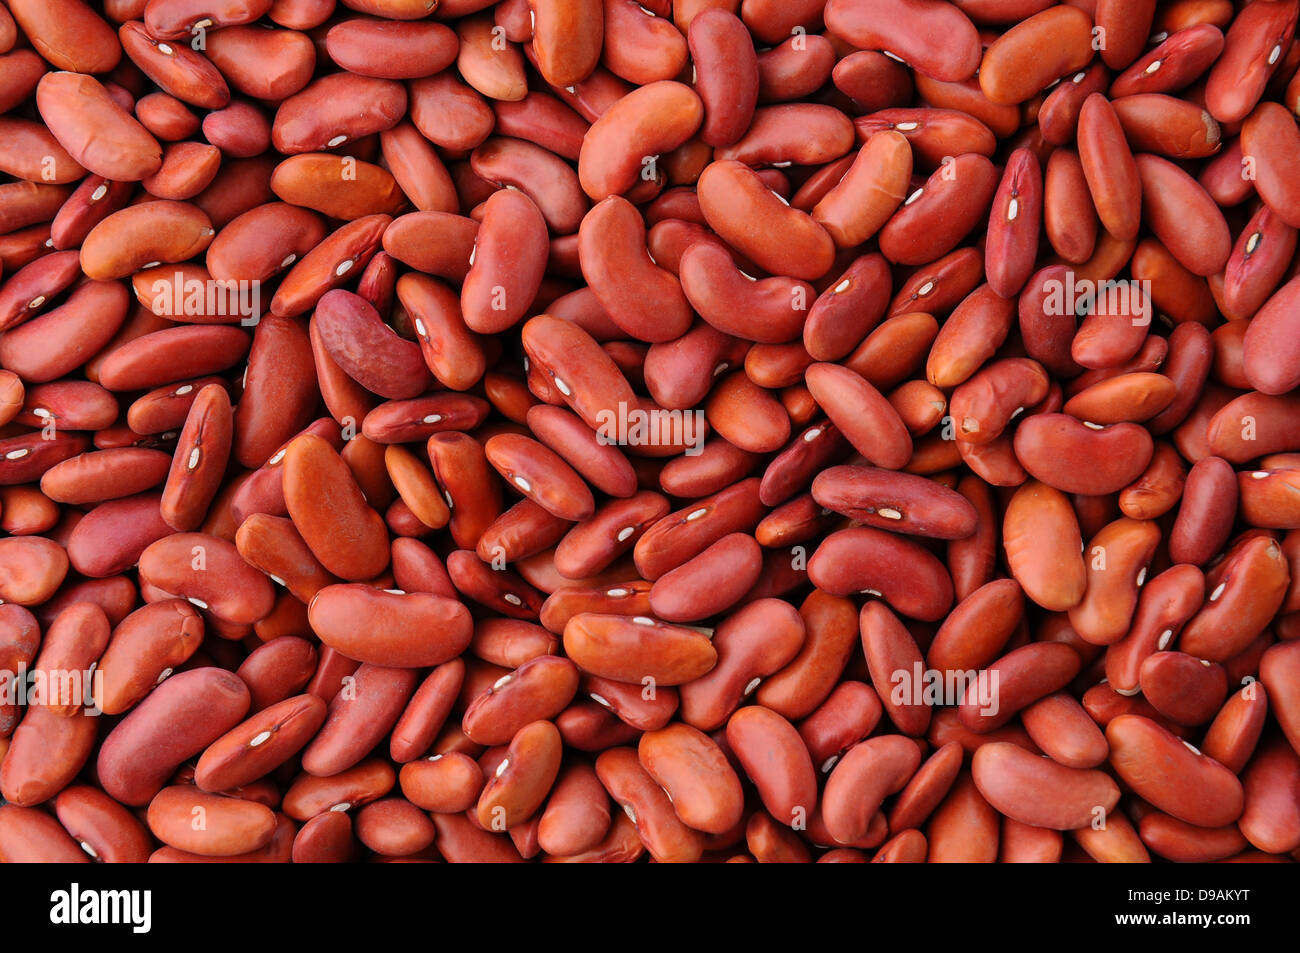 Un primo piano di una massa di fagioli rossi che riempie il fotogramma. Foto Stock